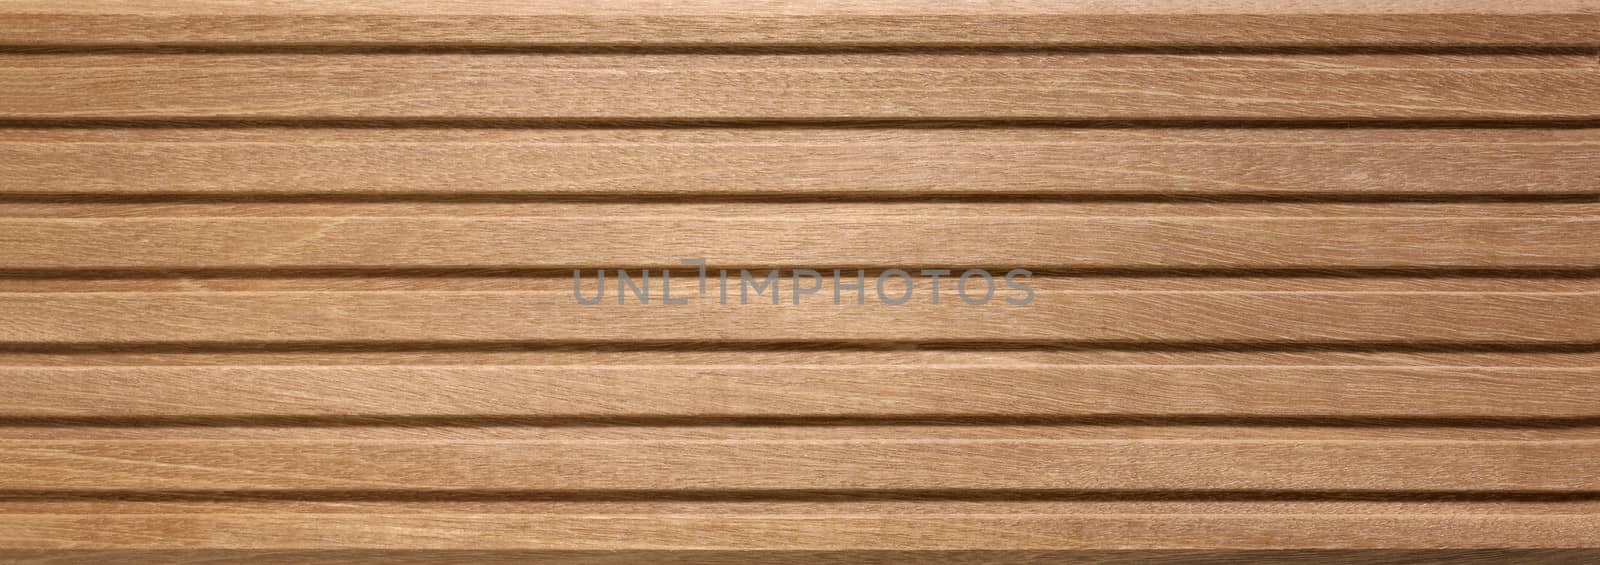 wooden board by gewoldi